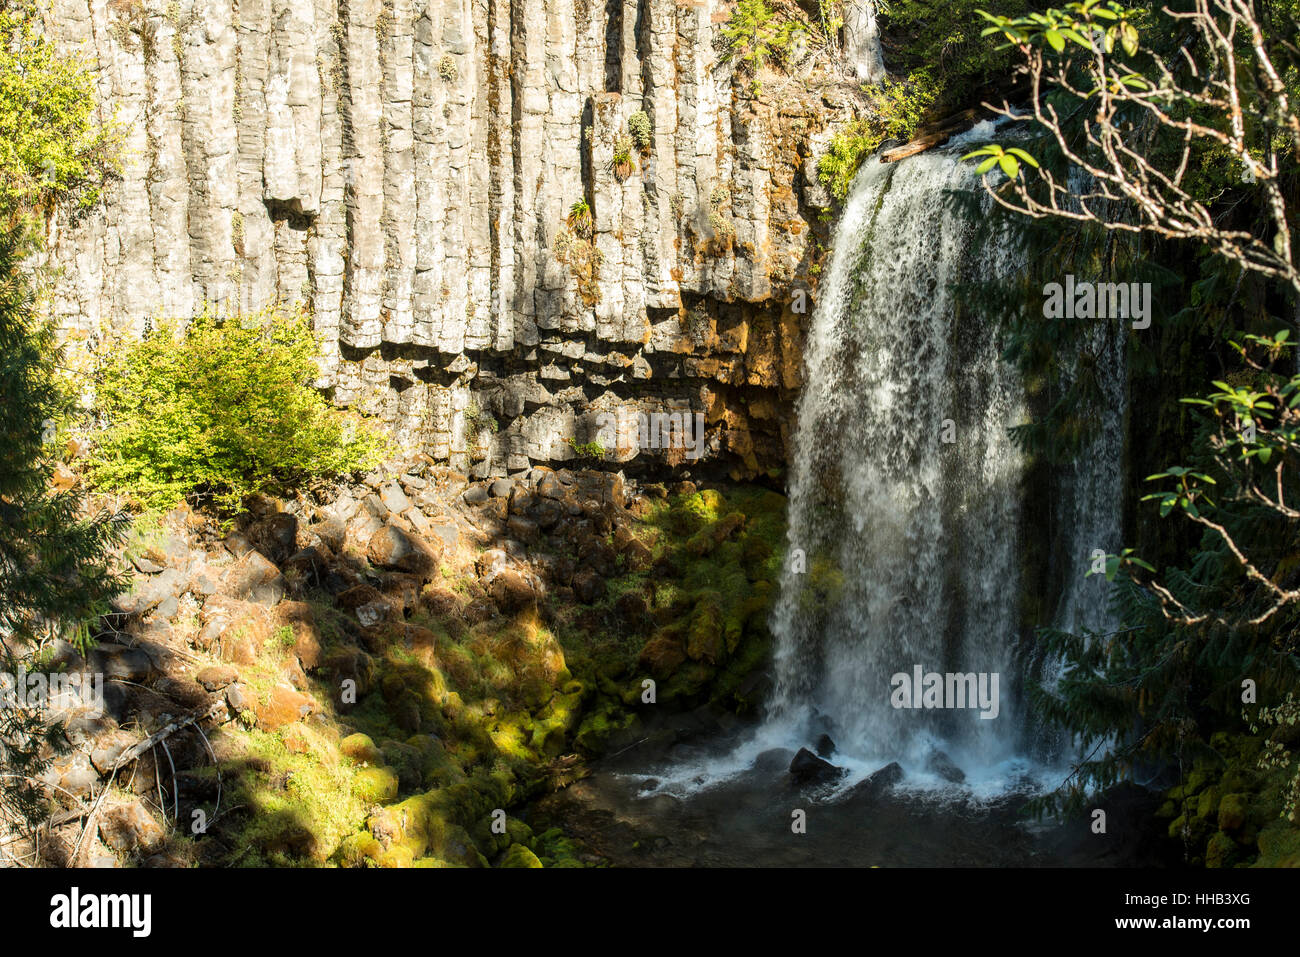 Warm Springs Wasserfall, Umpqua National Forest, Wasser fällt über eine säulenförmigen Basalt-Kante zu einem Pool unten, kurze Belichtungszeiten Stockfoto